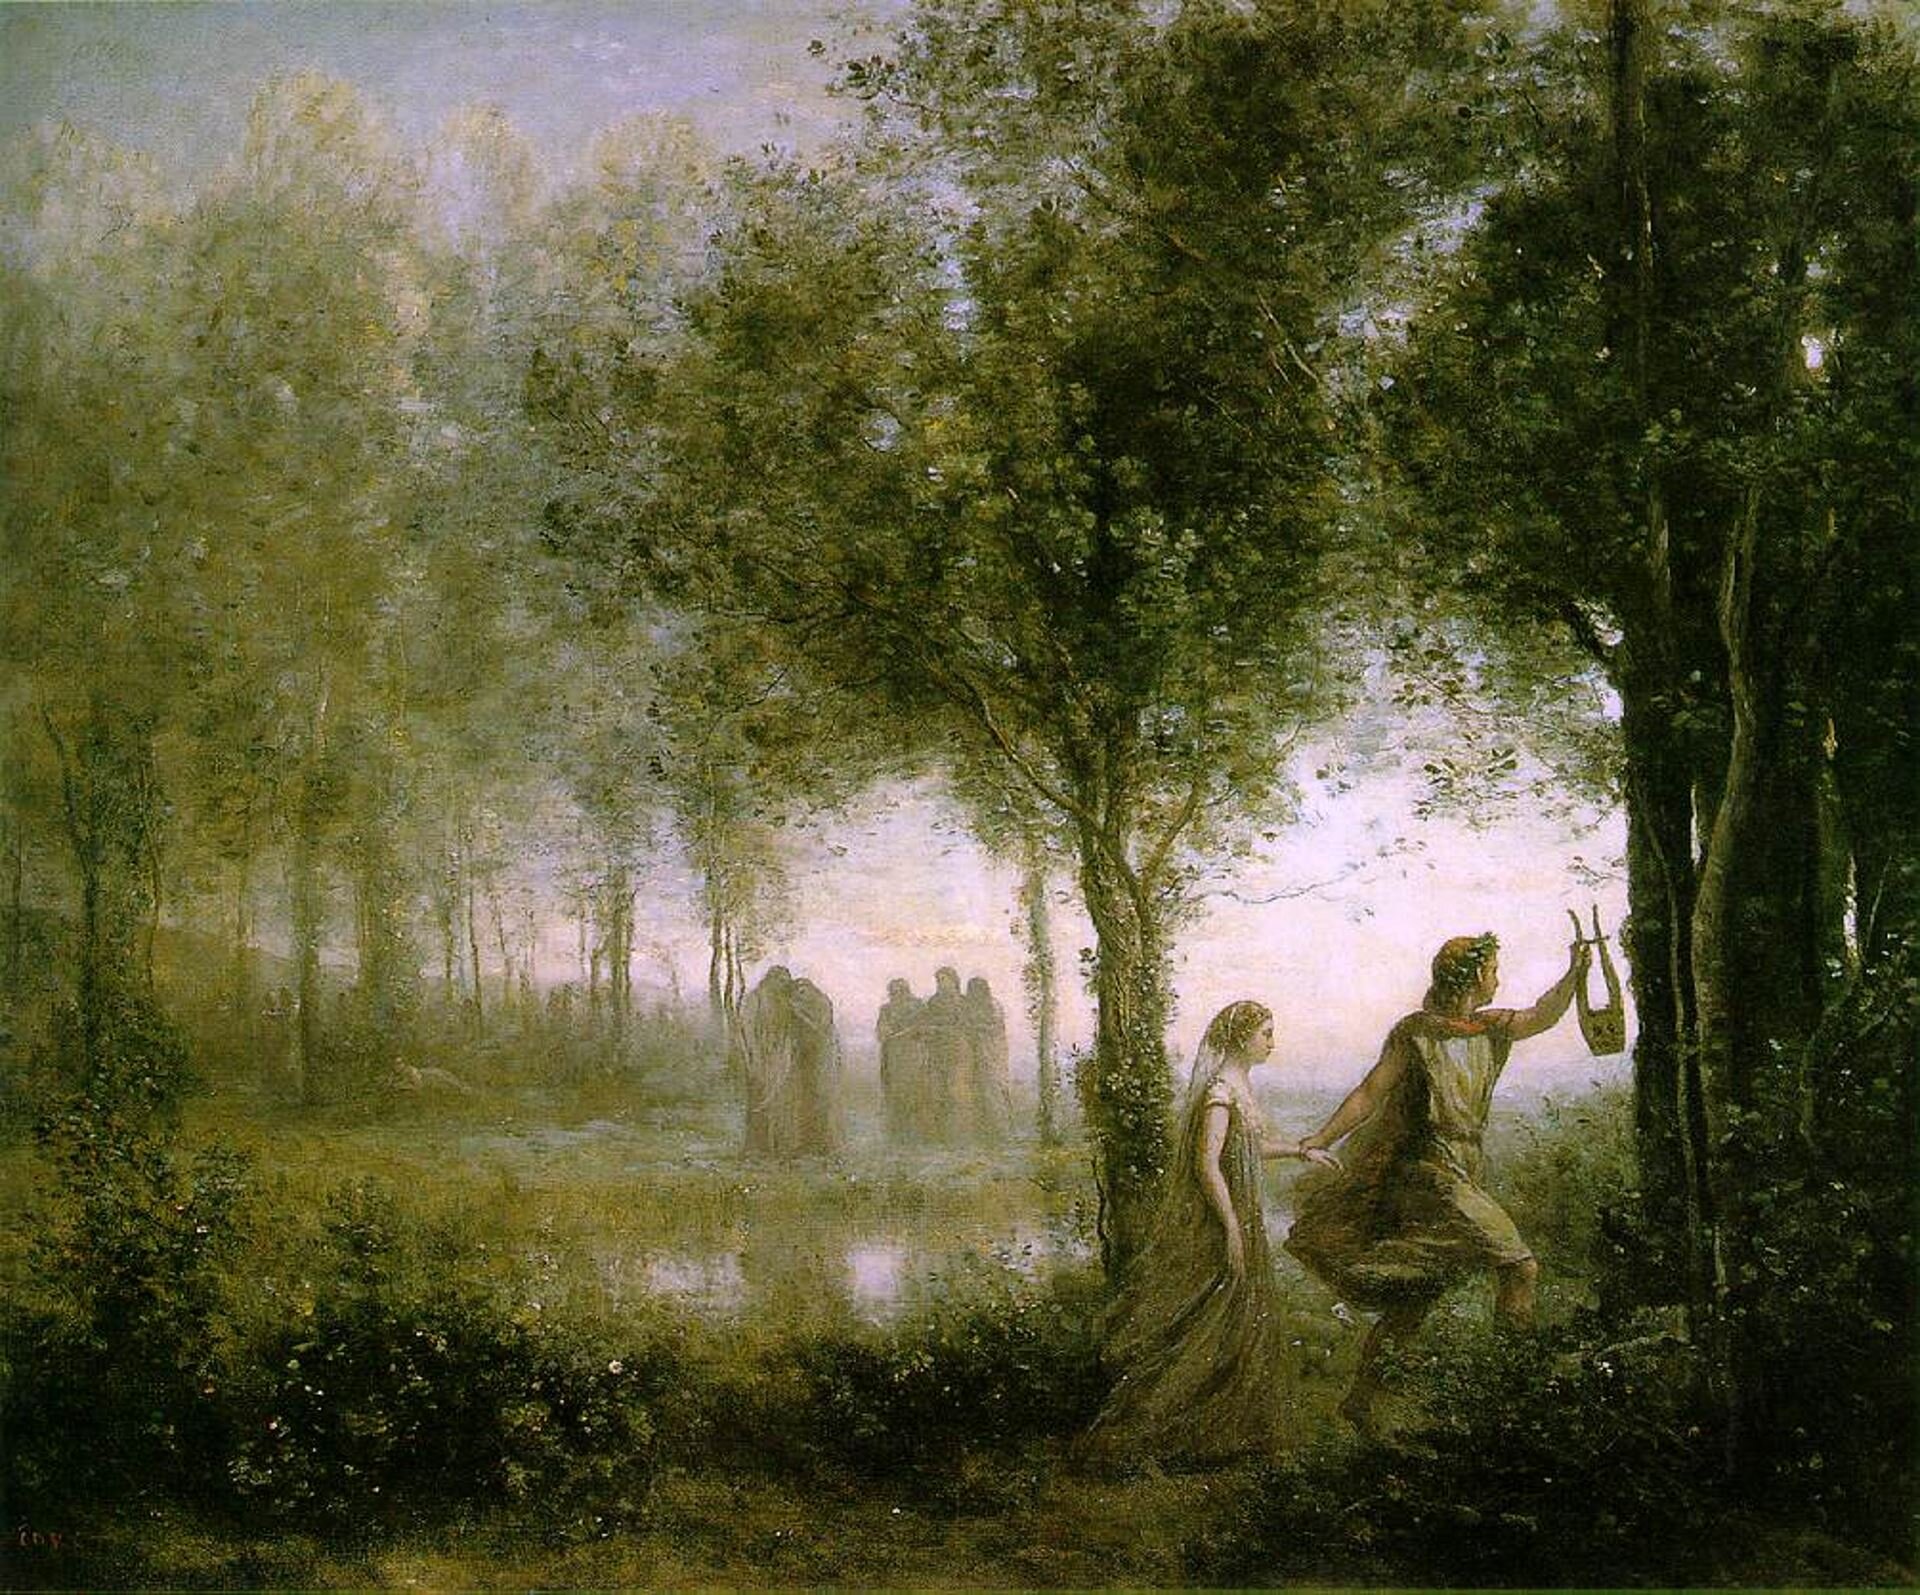 lustracja przedstawia obraz Jean-Baptiste-Camille Corot’a pt. „Orfeusz wyprowadzający Eurydykę z podziemi”. Obraz utrzymany jest w ciemnej tonacji, z przewagą zieleni. W prawym dolnym rogu widnieją dwie postaci: przodem kroczy mężczyzna w jasnej zwiewnej szacie, z wieńcem laurowym na głowie i lirą w ręku. Drugą ręką trzyma kobietę, która podąża za nim. Ubrana jest w cienką długą suknię, na głowie ma welon. W centrum obrazu widnieje podmokły teren (bagno?); dookoła rosną drzewa i krzaki. W dali stoją dwie grupy smętnych postaci.